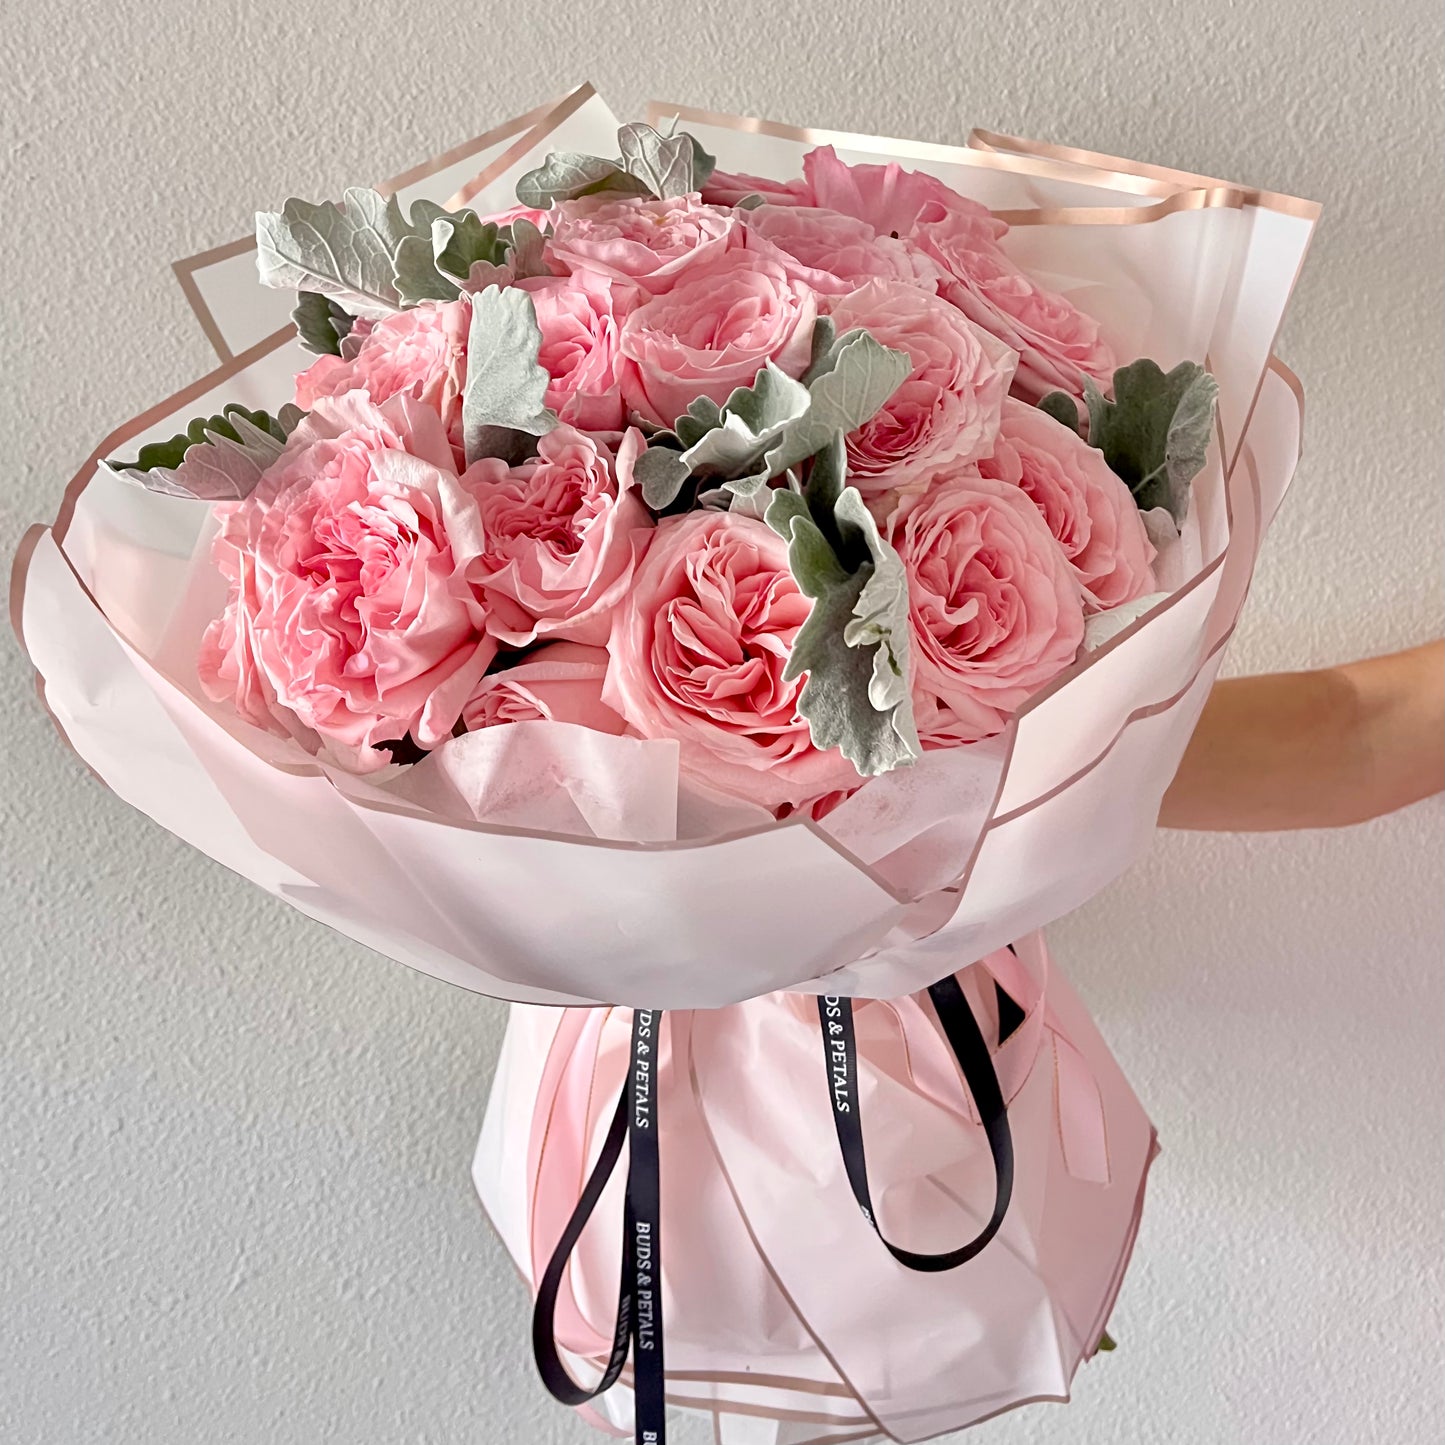 Pink O’Hara Garden Roses Bouquet